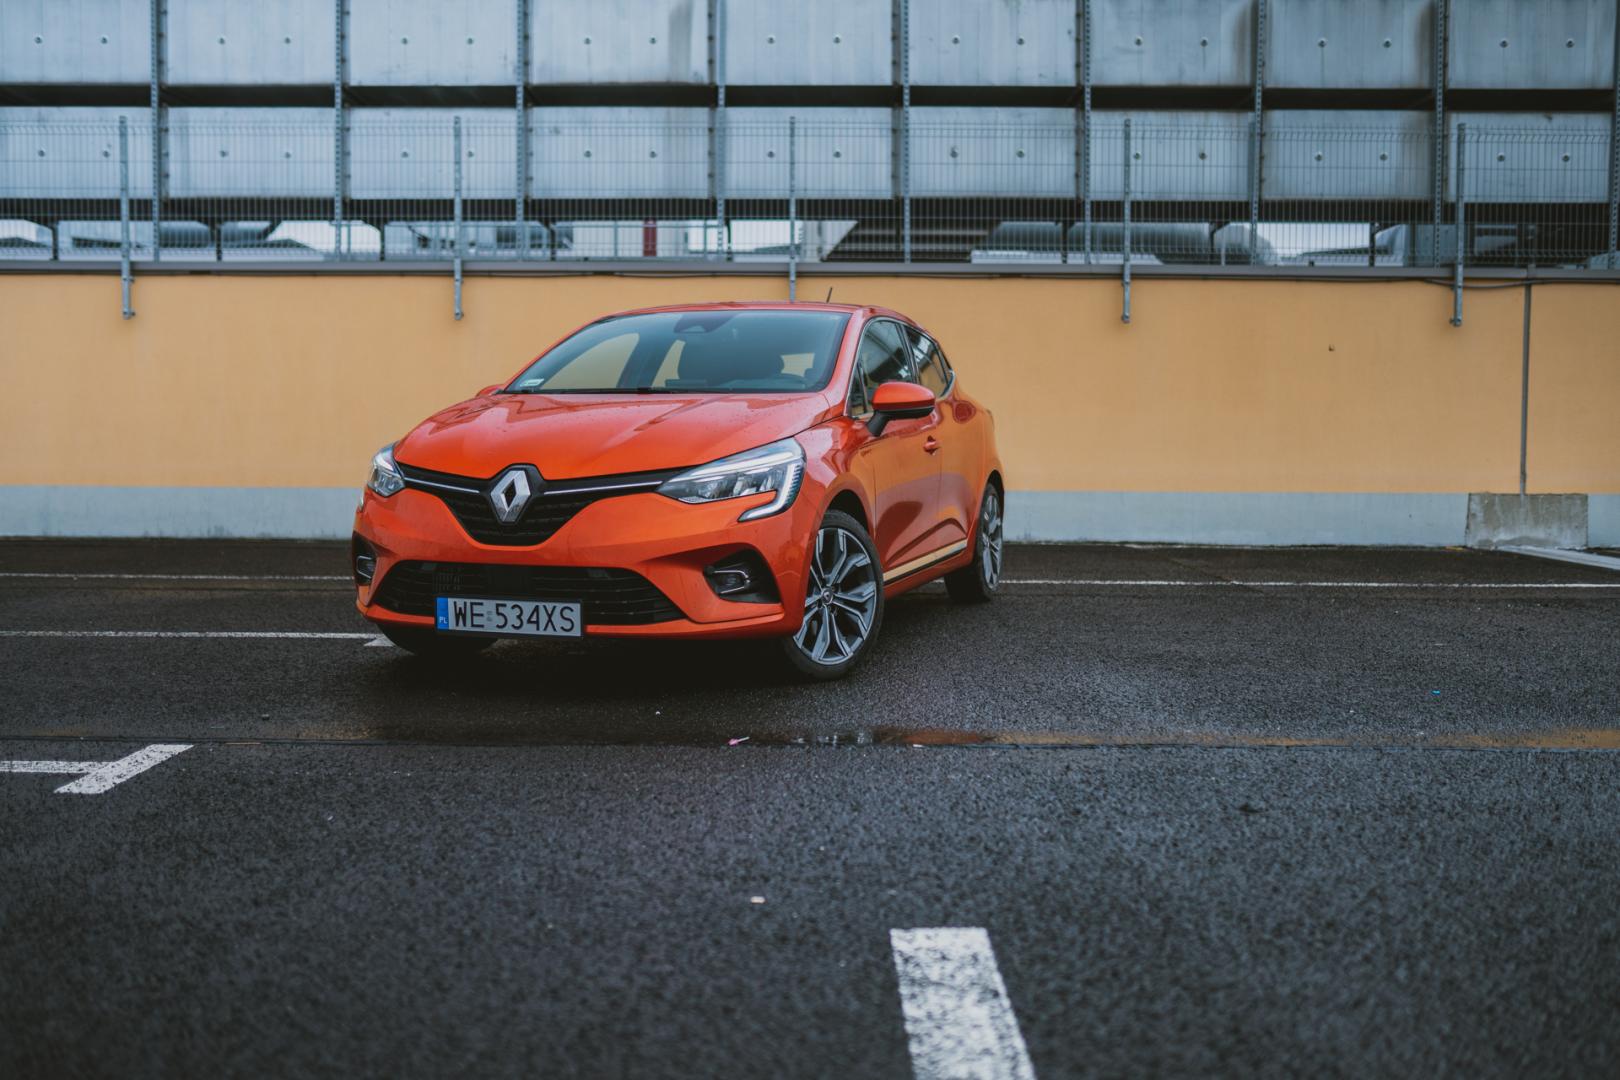 Renault Clio 1.3 Tce 130 Km – To Jedno Z Największych Zaskoczeń Ostatnich Miesięcy • Autocentrum.pl